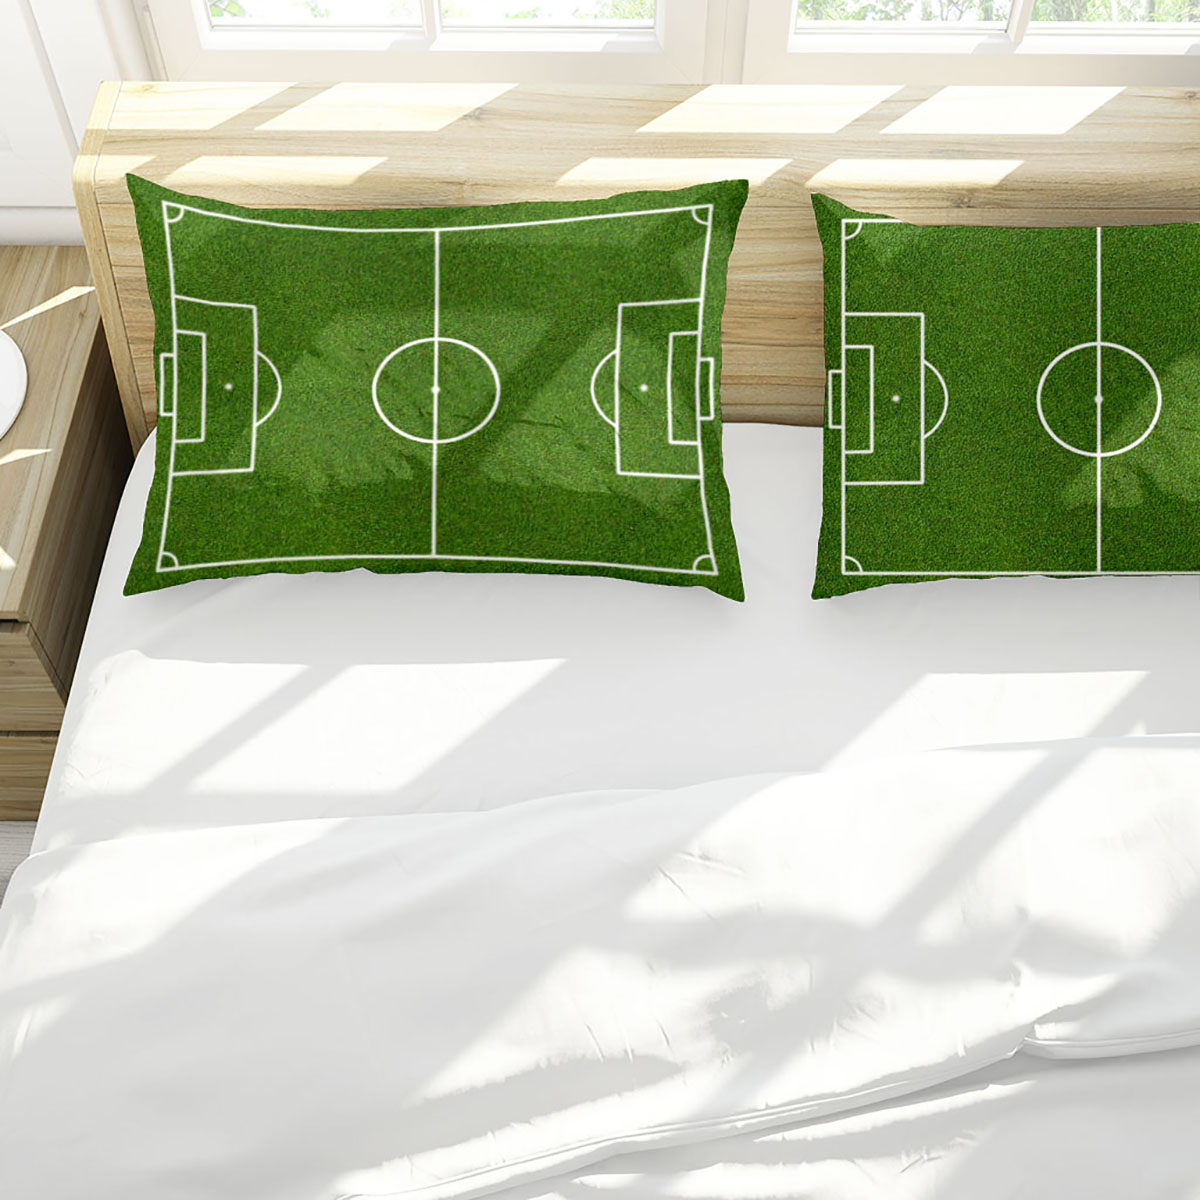 3D-Printed-Football-Basketball-Bowling-GA-Bedding-Set-Bedlinen-Duvet-Cover-Pillowcases-for-Bedding-S-1788703-3